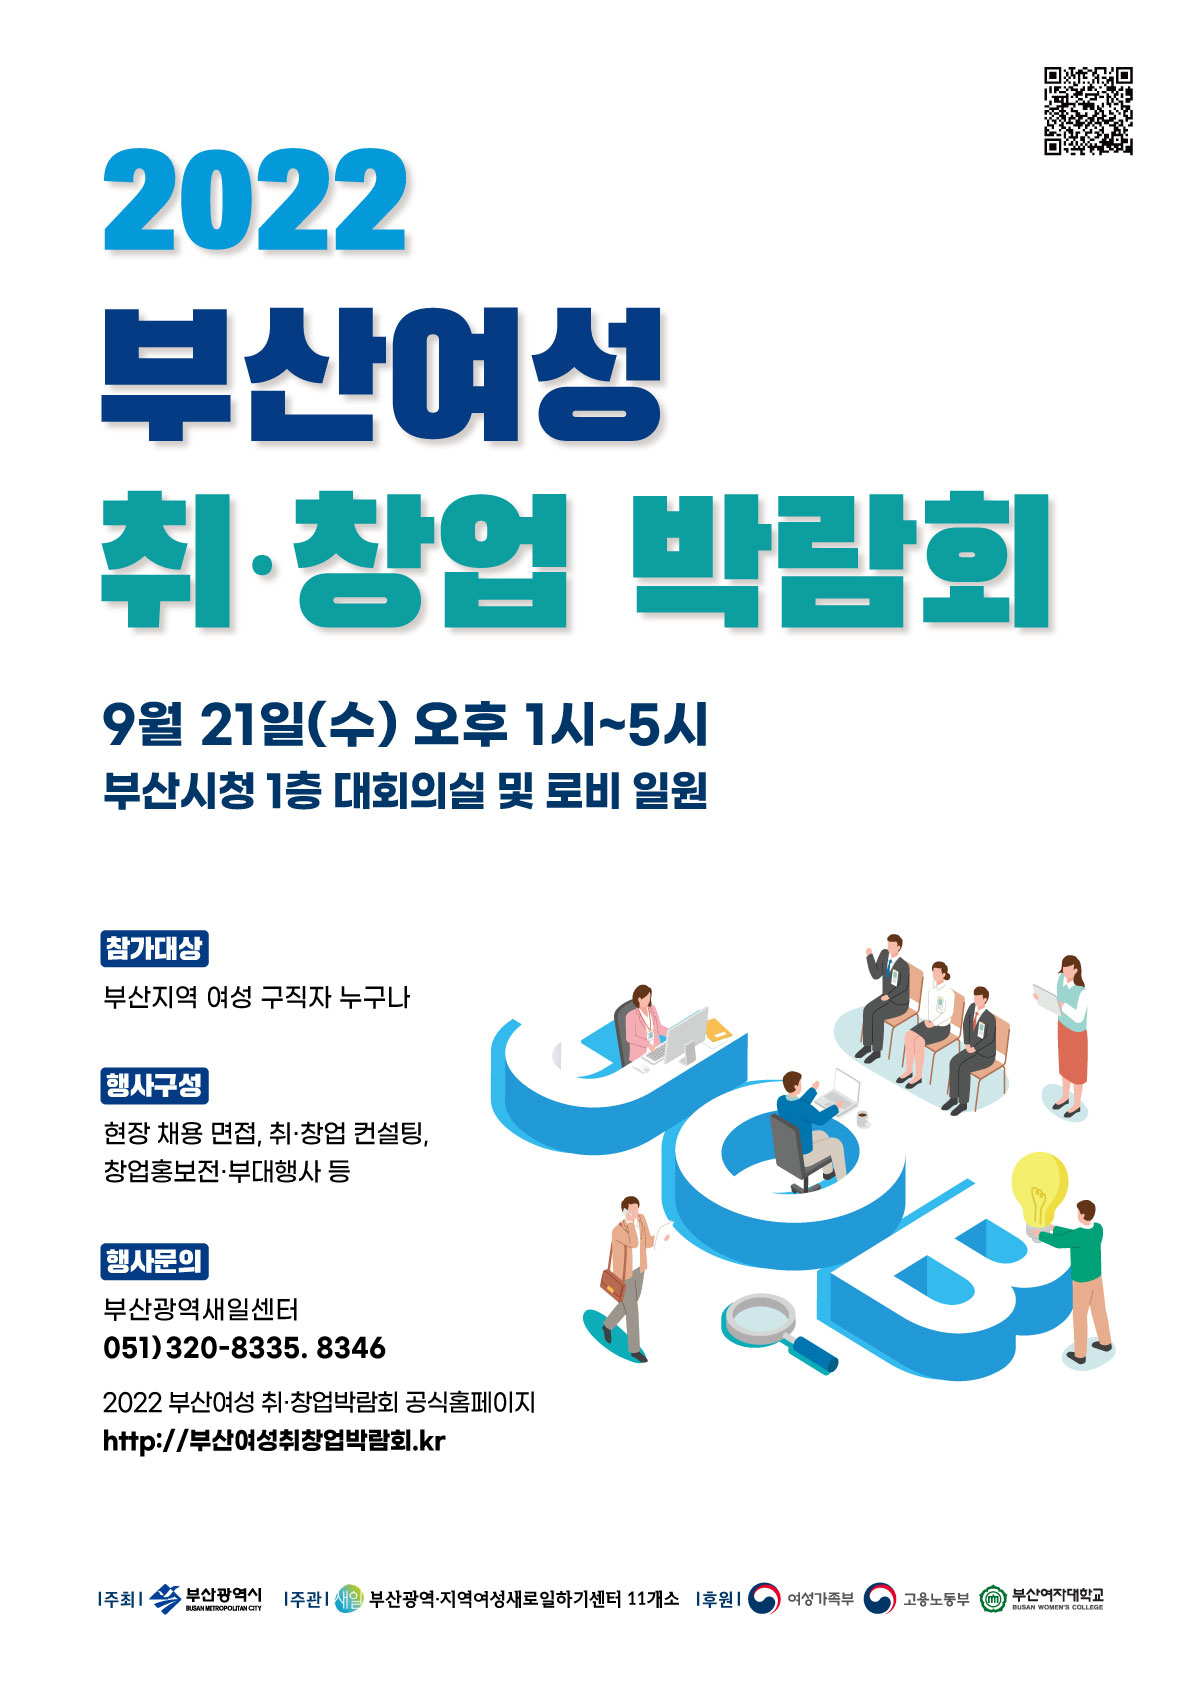 「2022 부산 여성 취·창업박람회」개최 안내